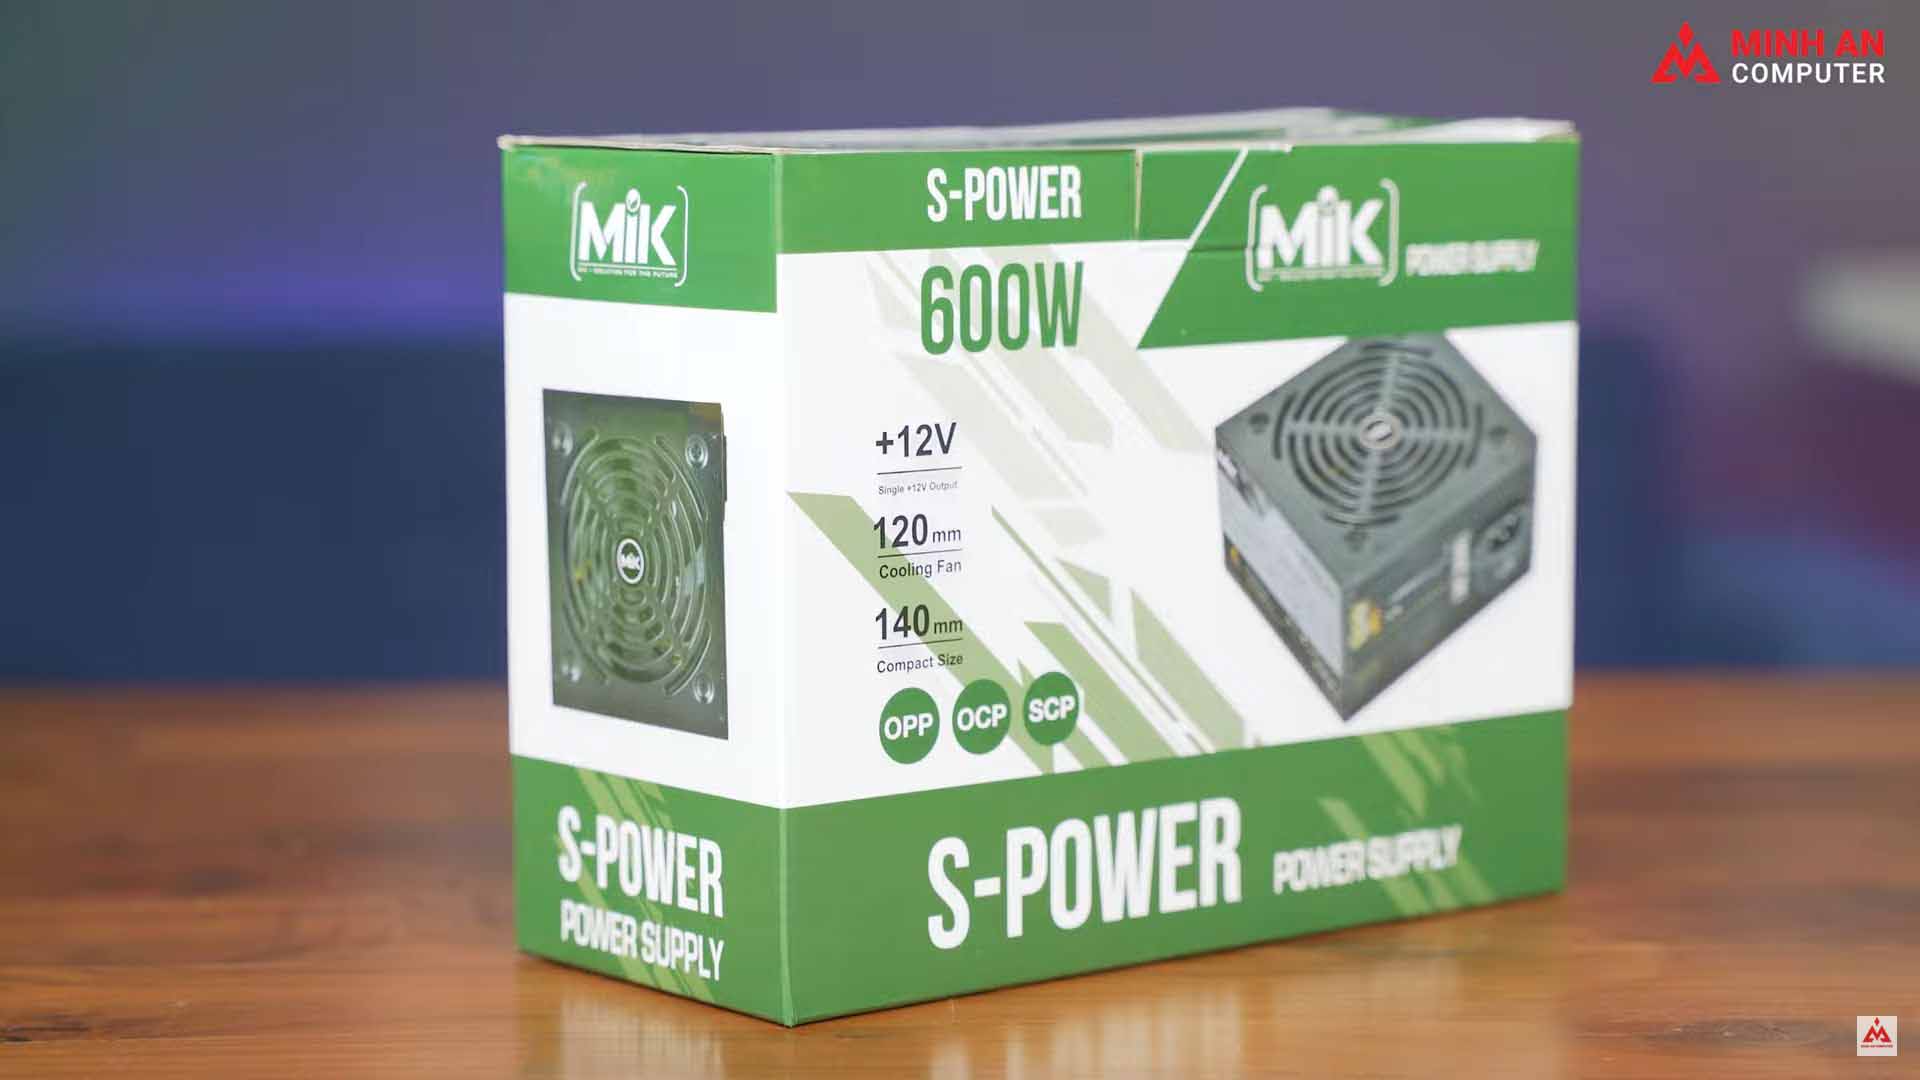 MIK S-Power 600